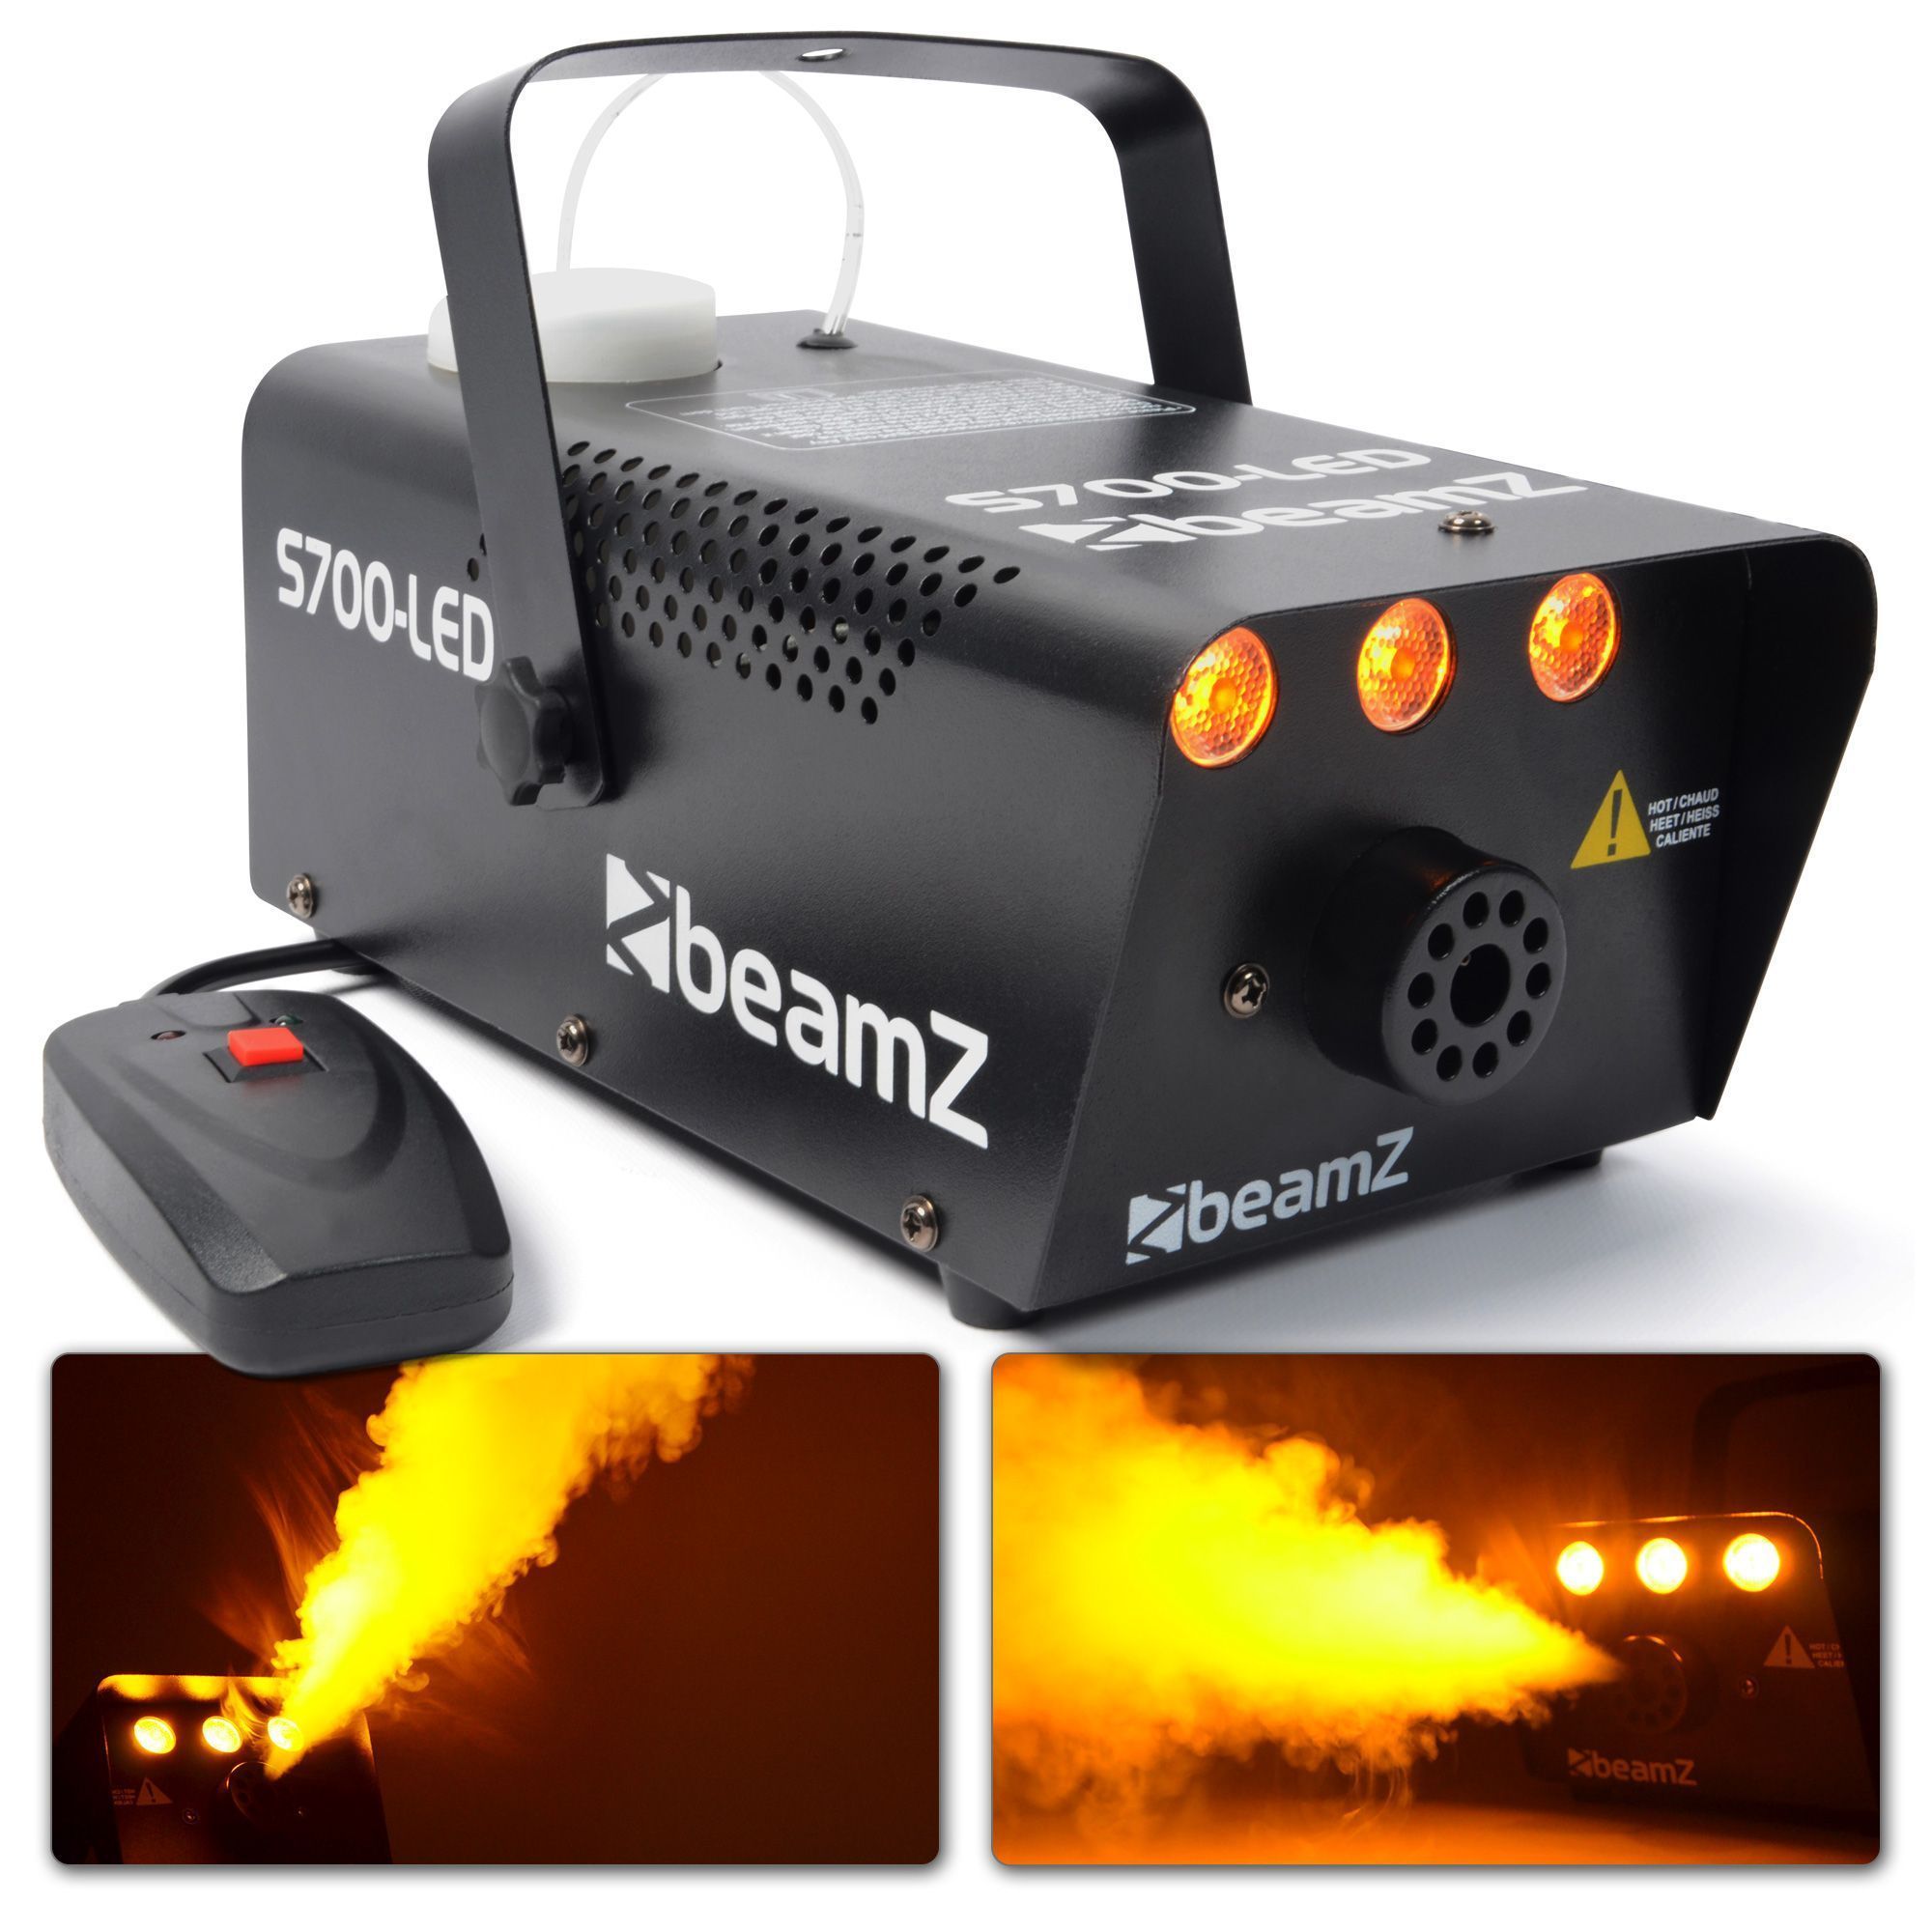 BeamZ S700 Machine à Fumée avec Liquide de Nettoyage et de Fumée - 700W